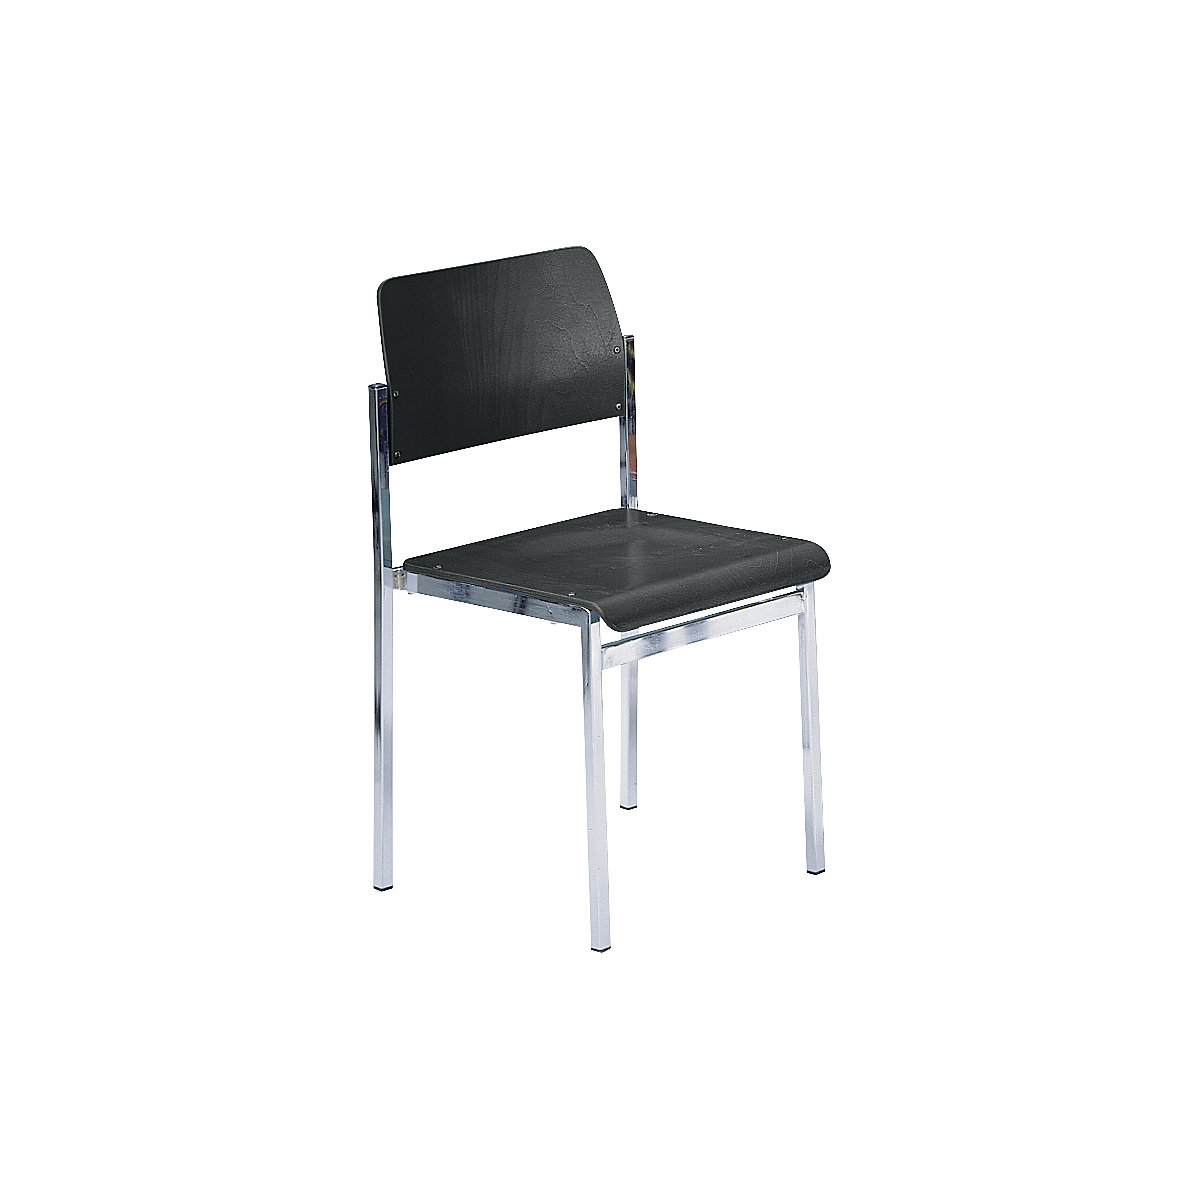 Krzesło do ustawiania w stos SUSAN, szkielet chromowany, opak. 4 szt., drewno antracytowe-3